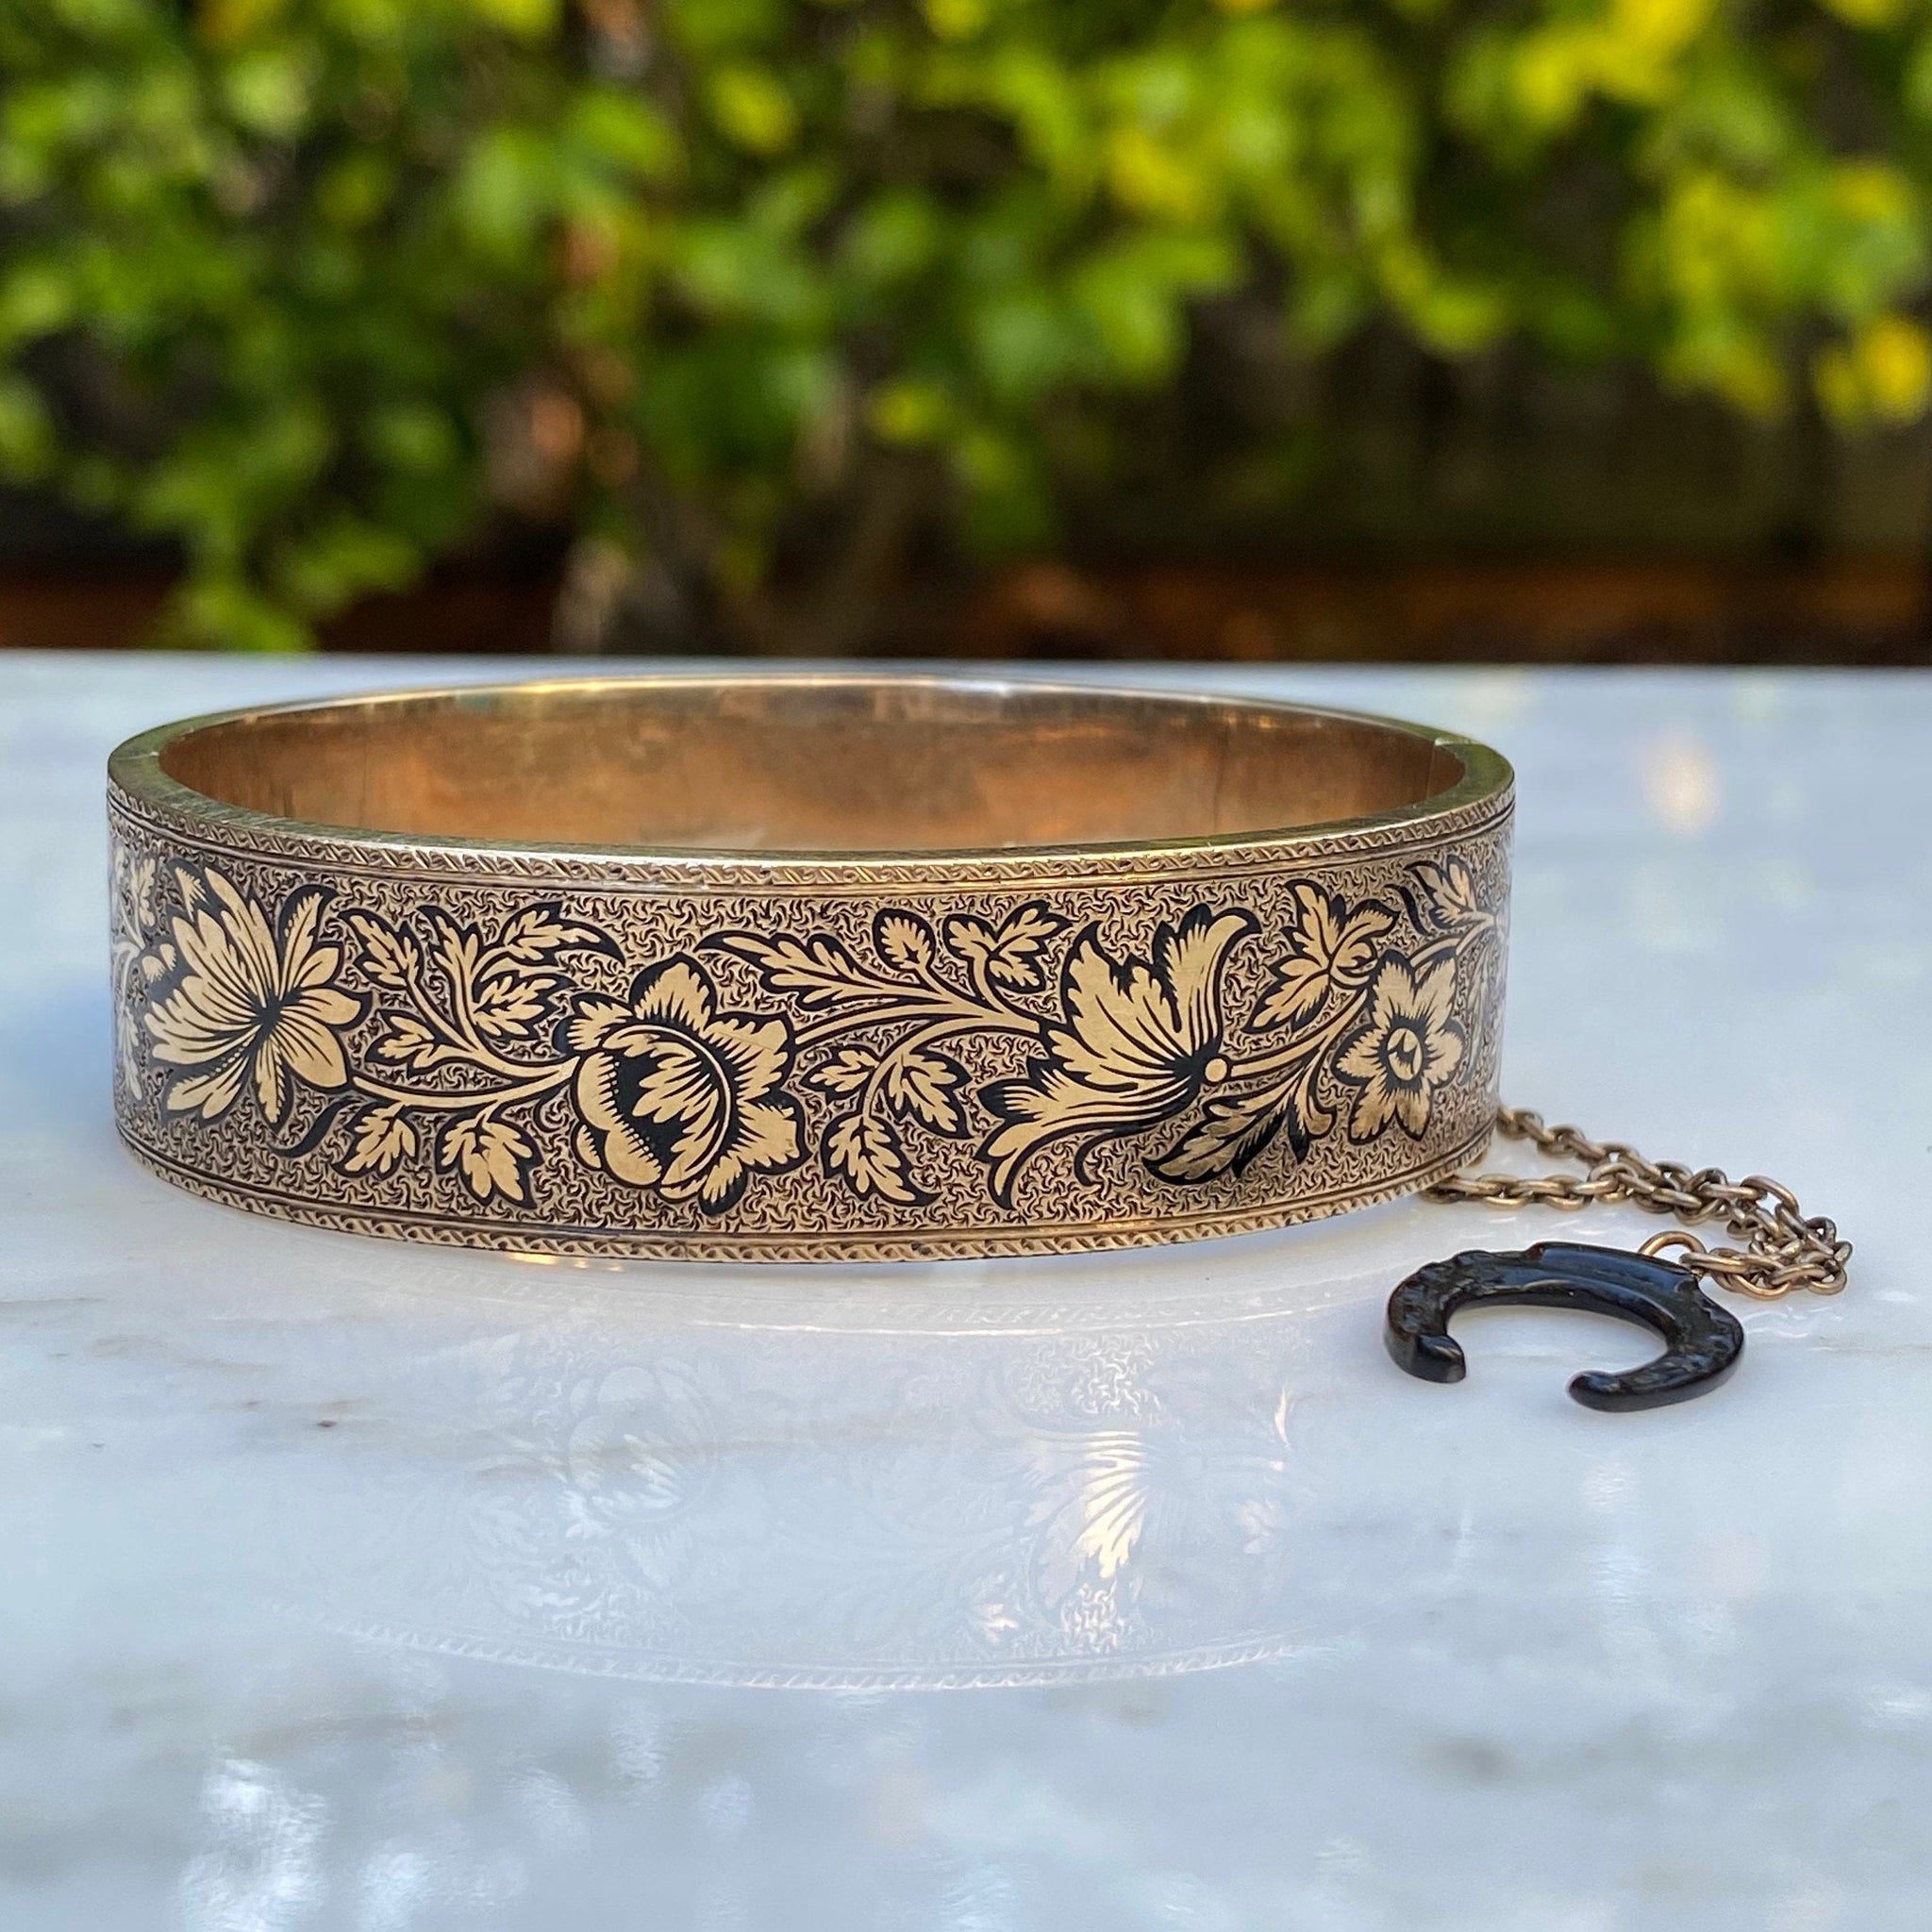 Gold Filled Bangle Bracelet with etched floral design - 7